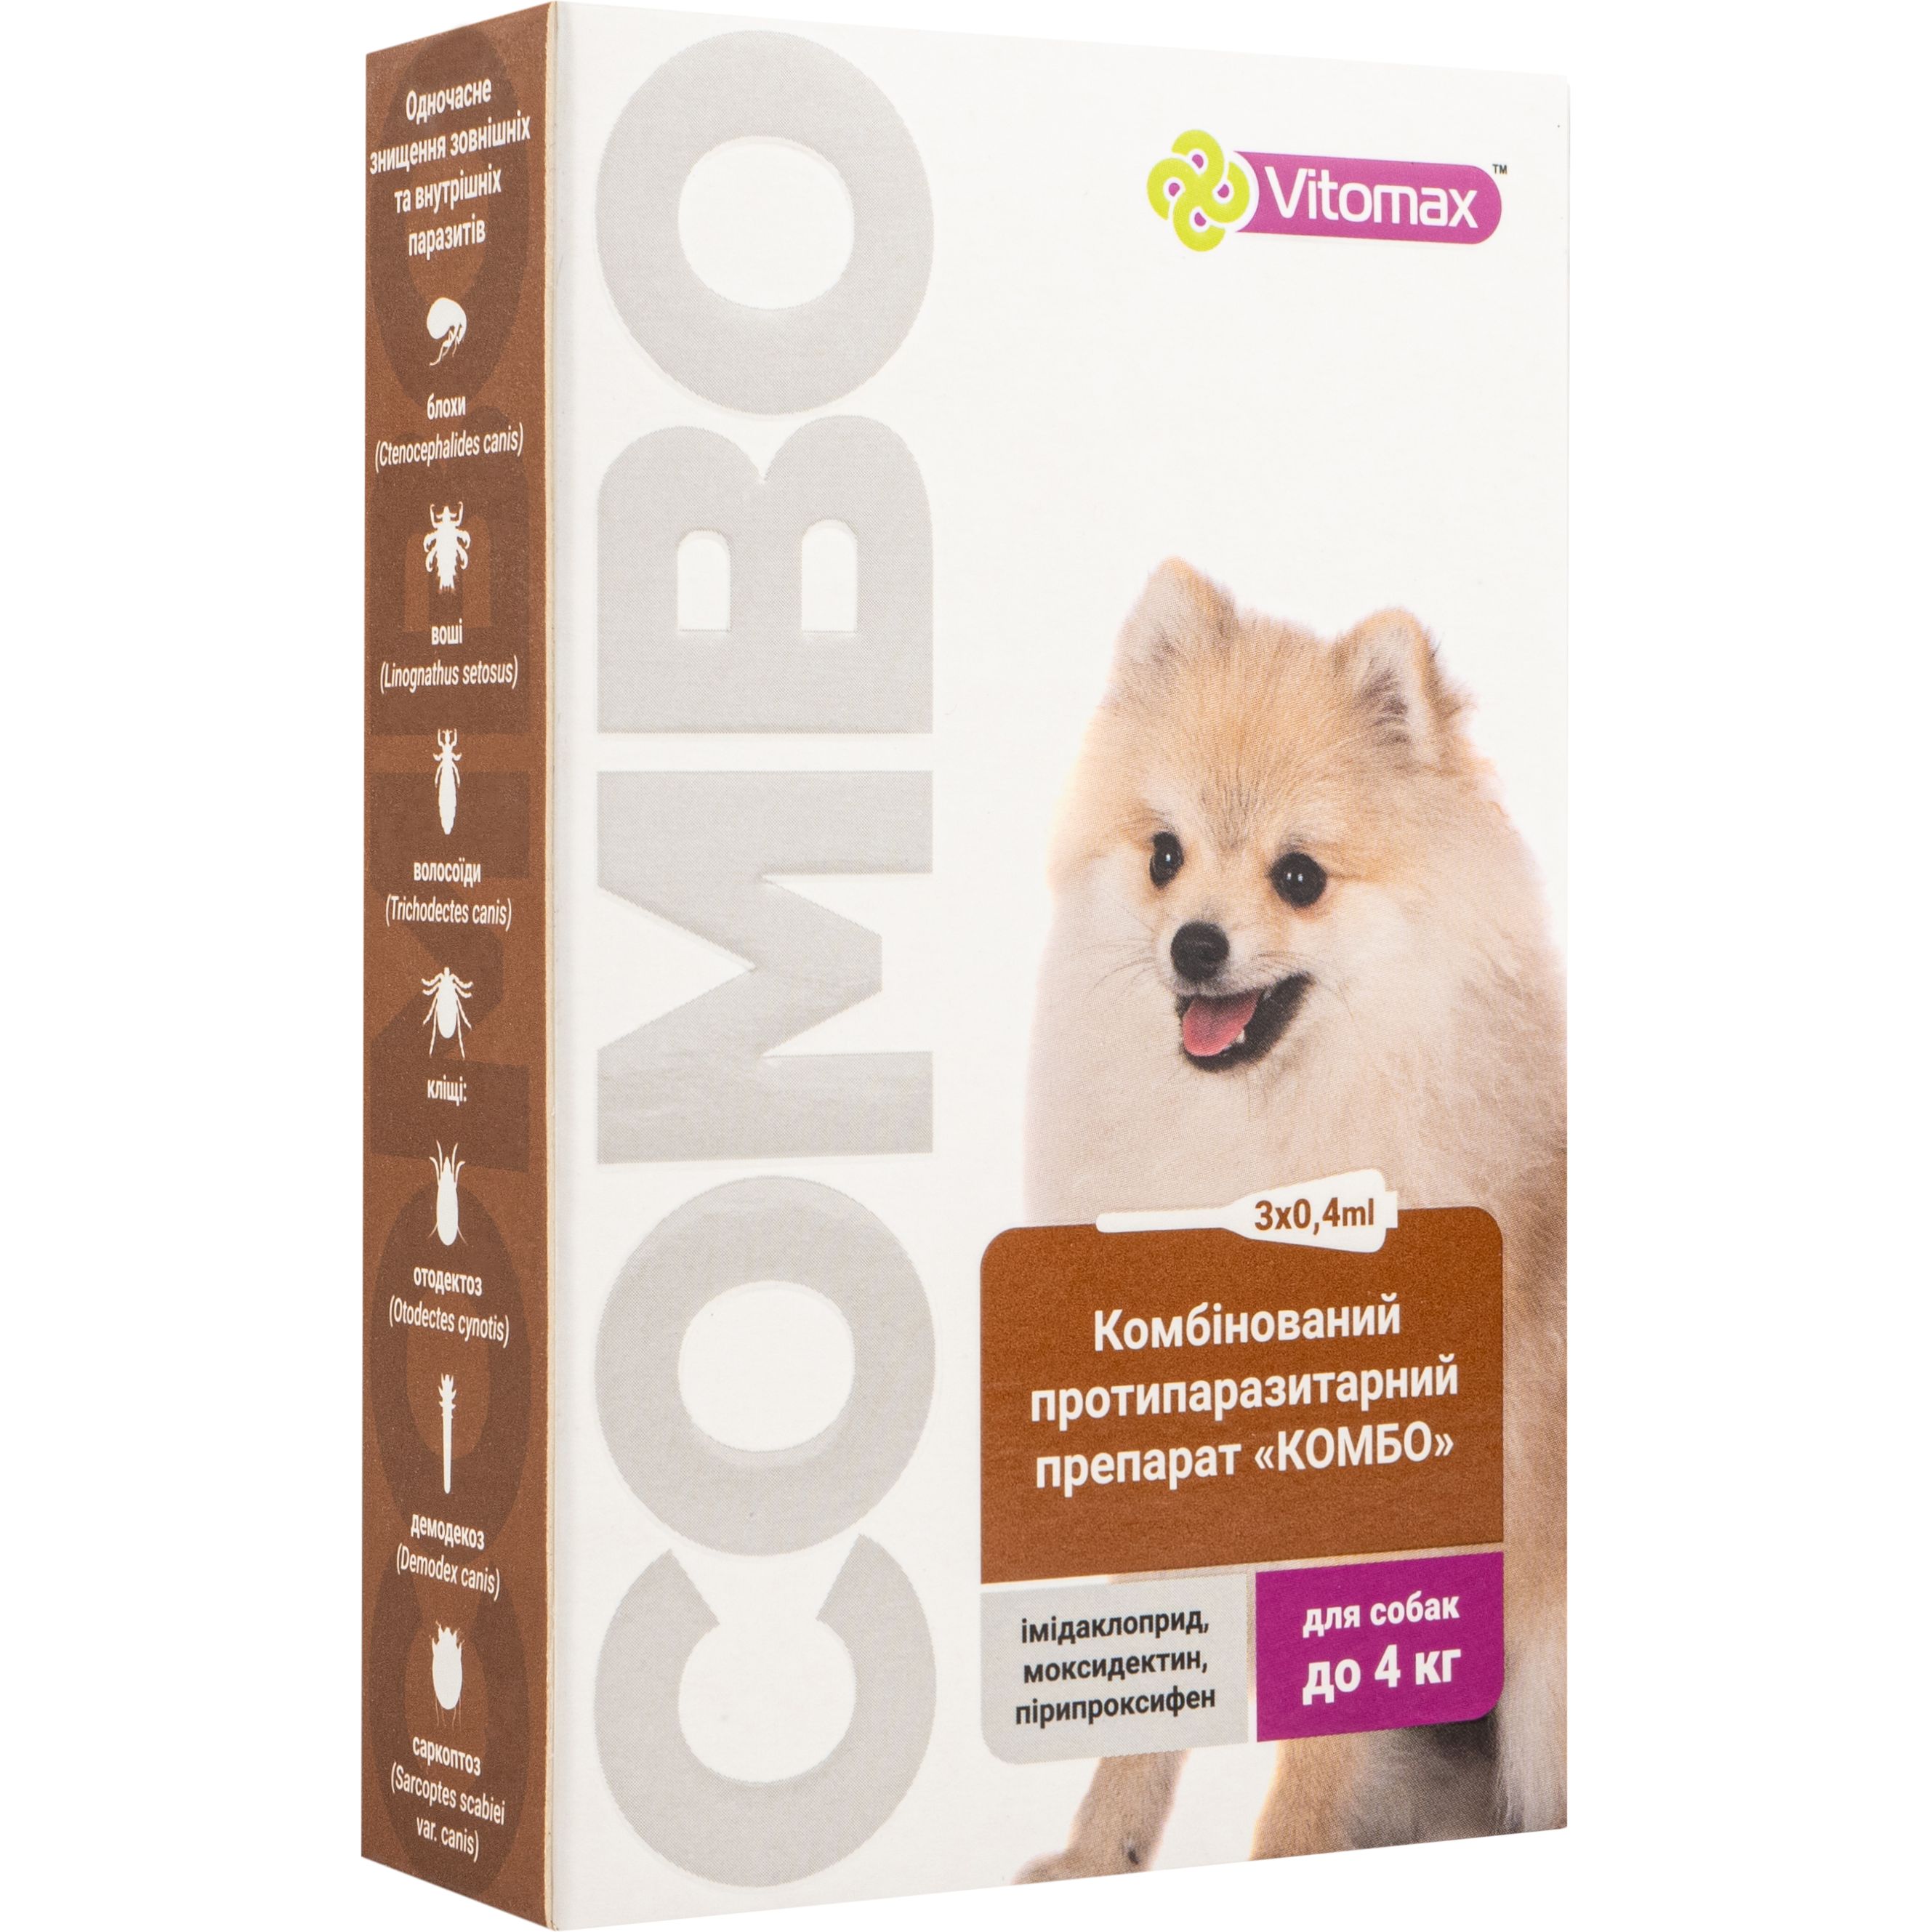 Краплі Vitomax комбо для собак до 4 кг, 0.4 мл, 3 шт. - фото 1